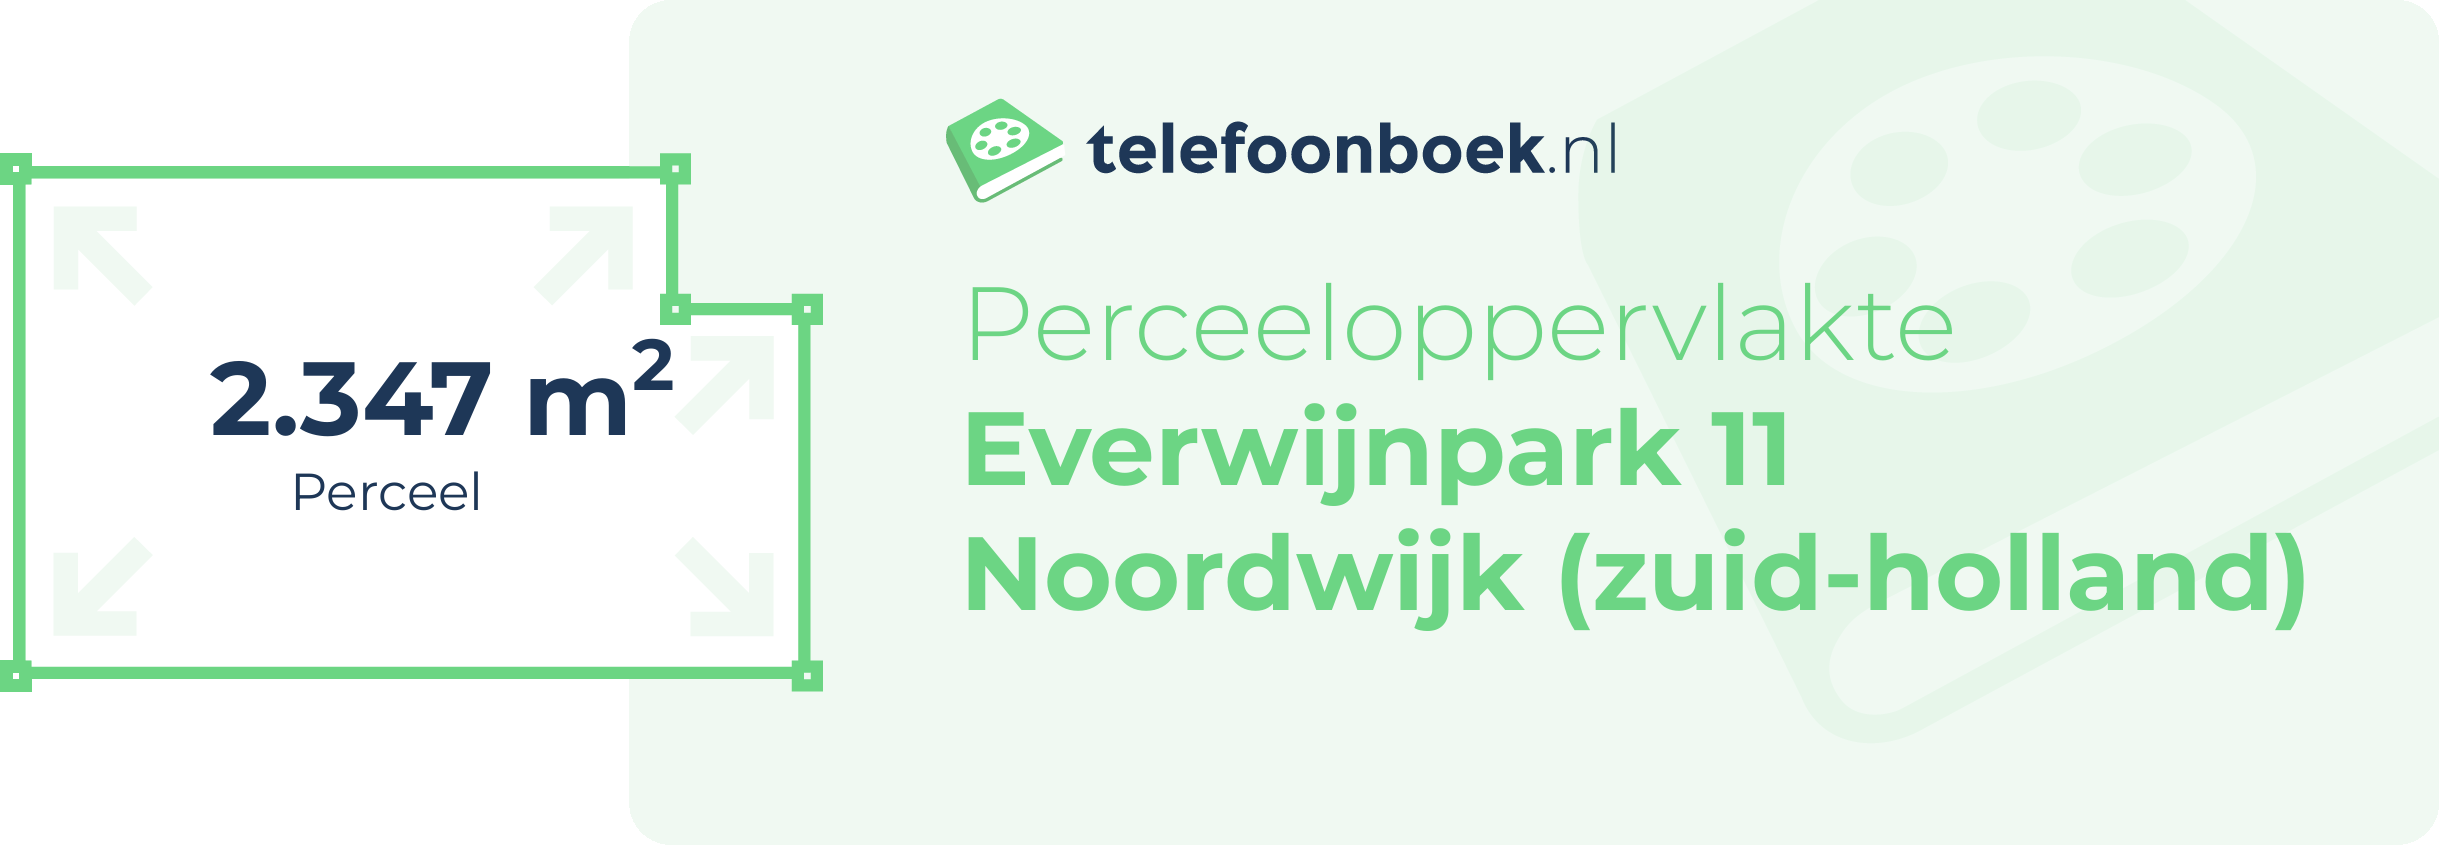 Perceeloppervlakte Everwijnpark 11 Noordwijk (Zuid-Holland)